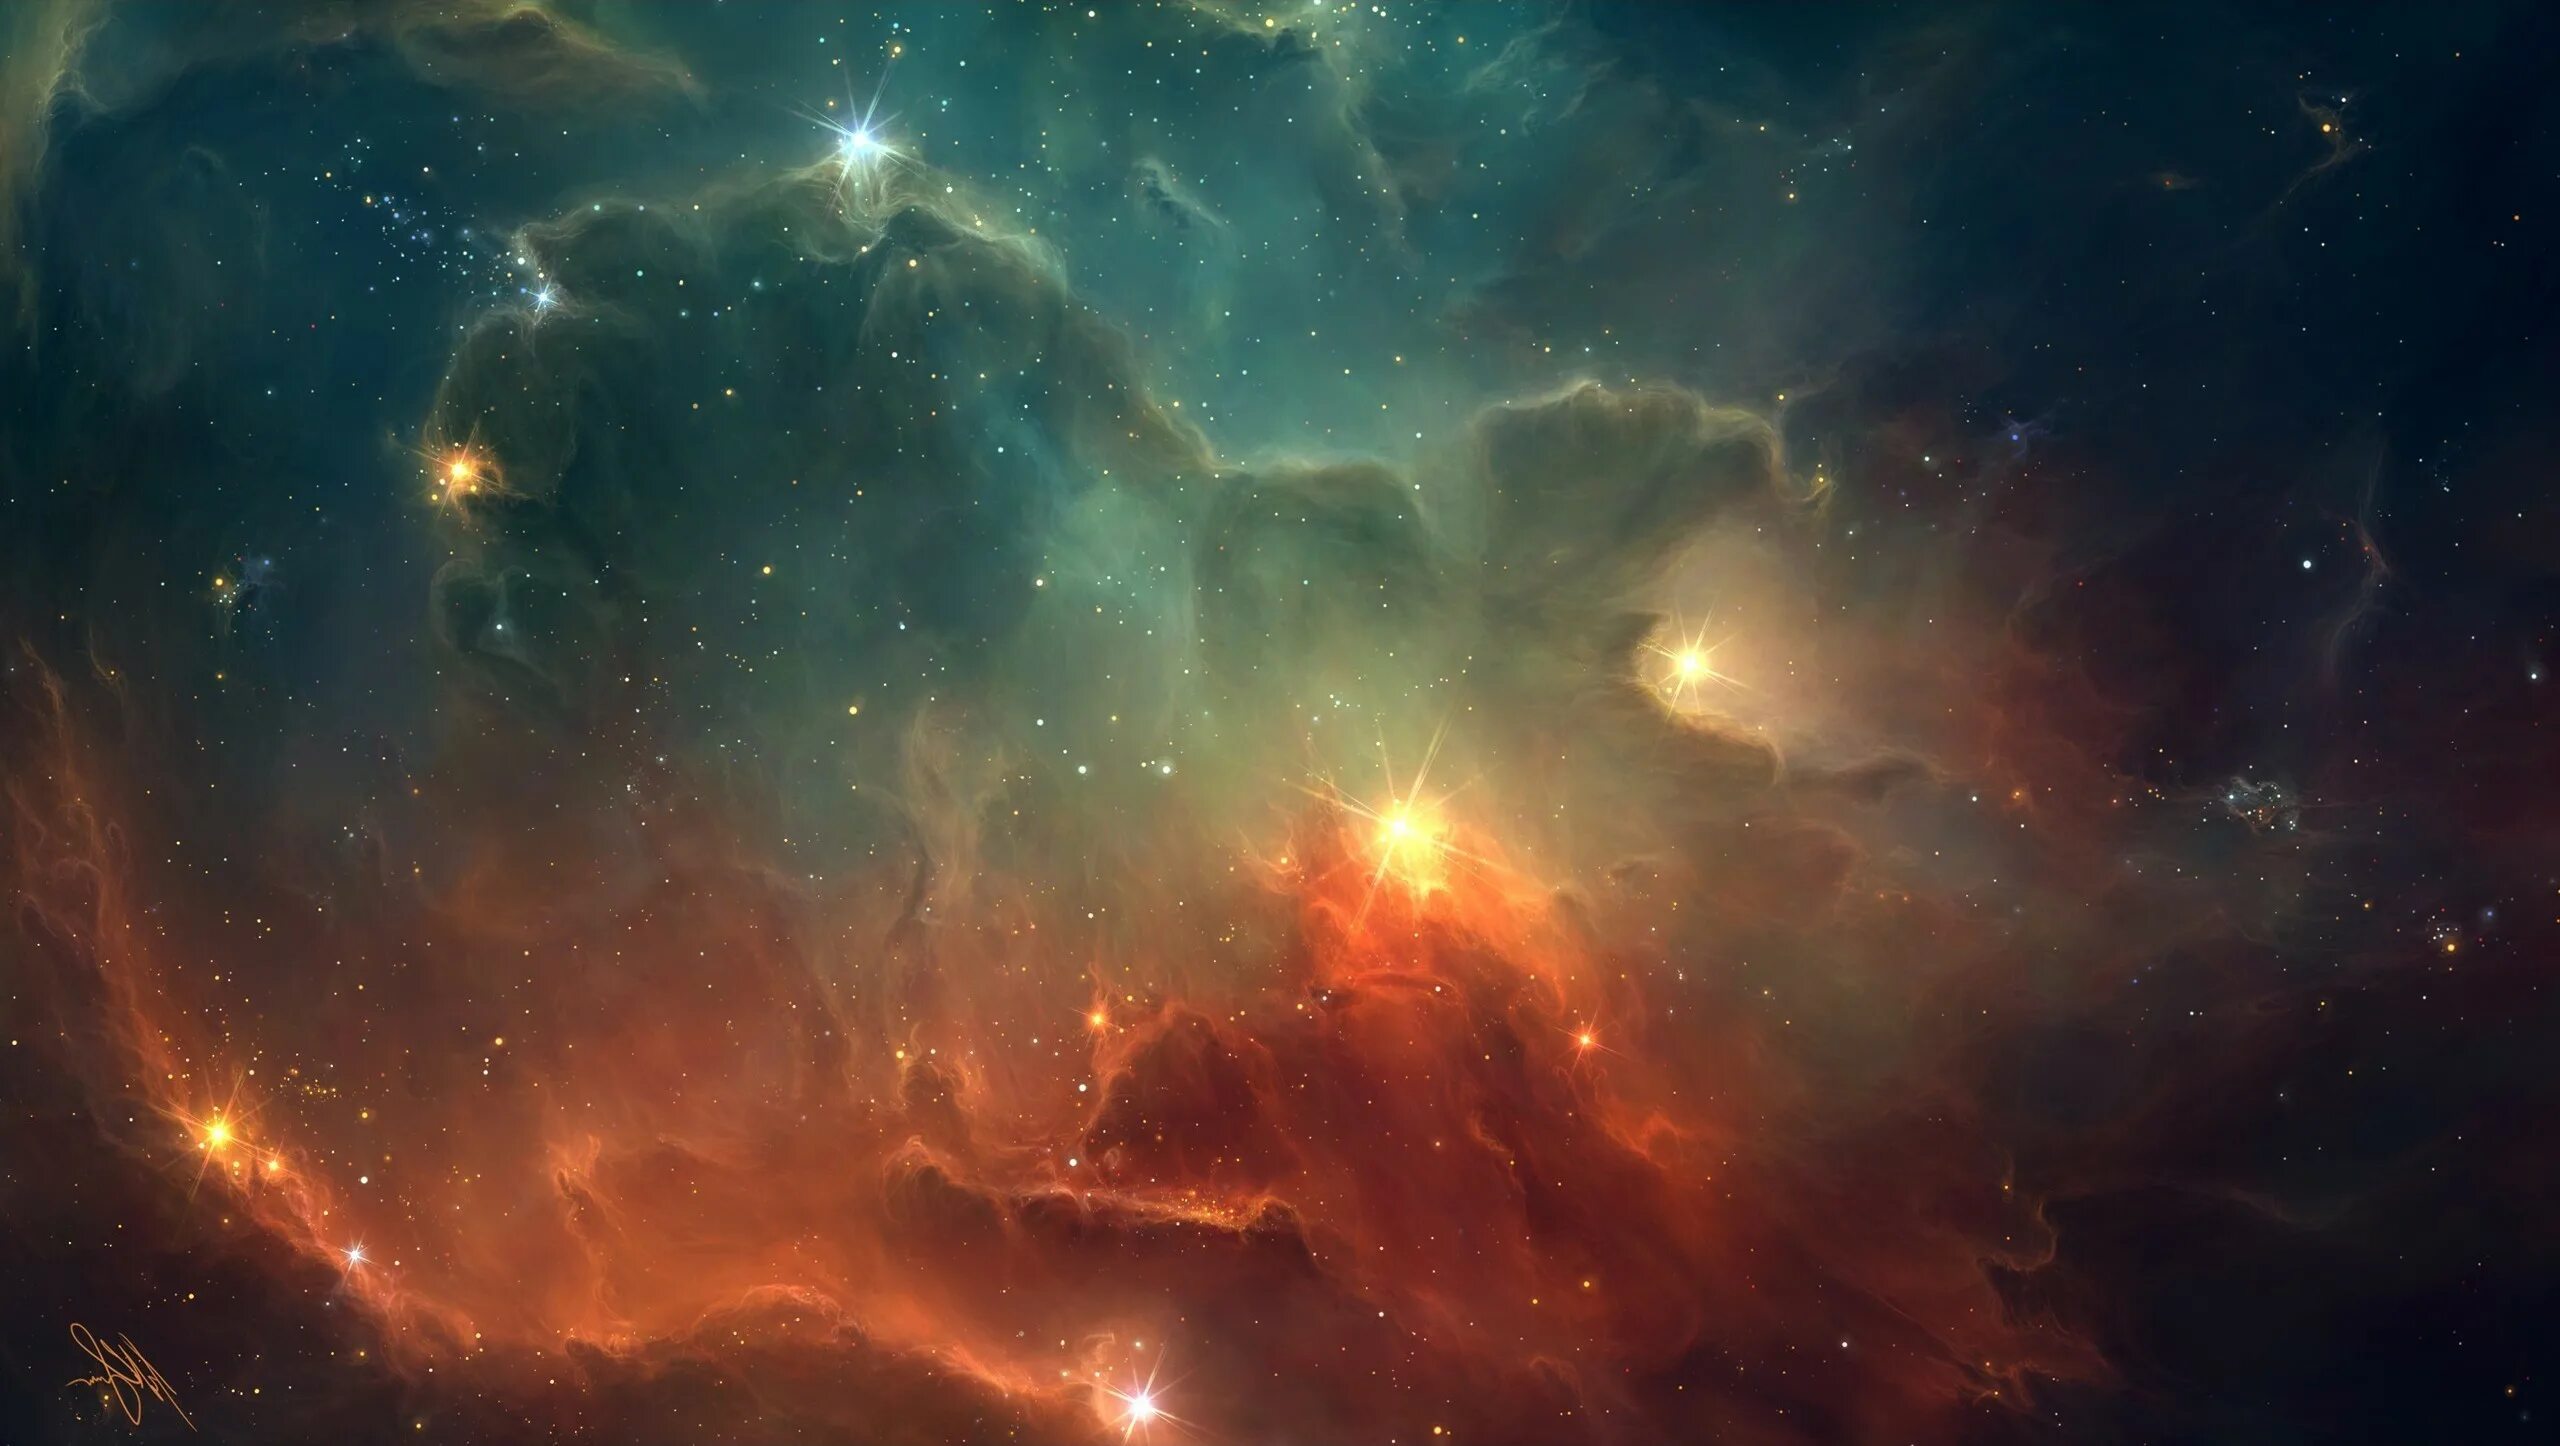 Qhd 2560x1440. Туманность Геликс. Звездная туманность. Туманности в космосе. Красивый космос.